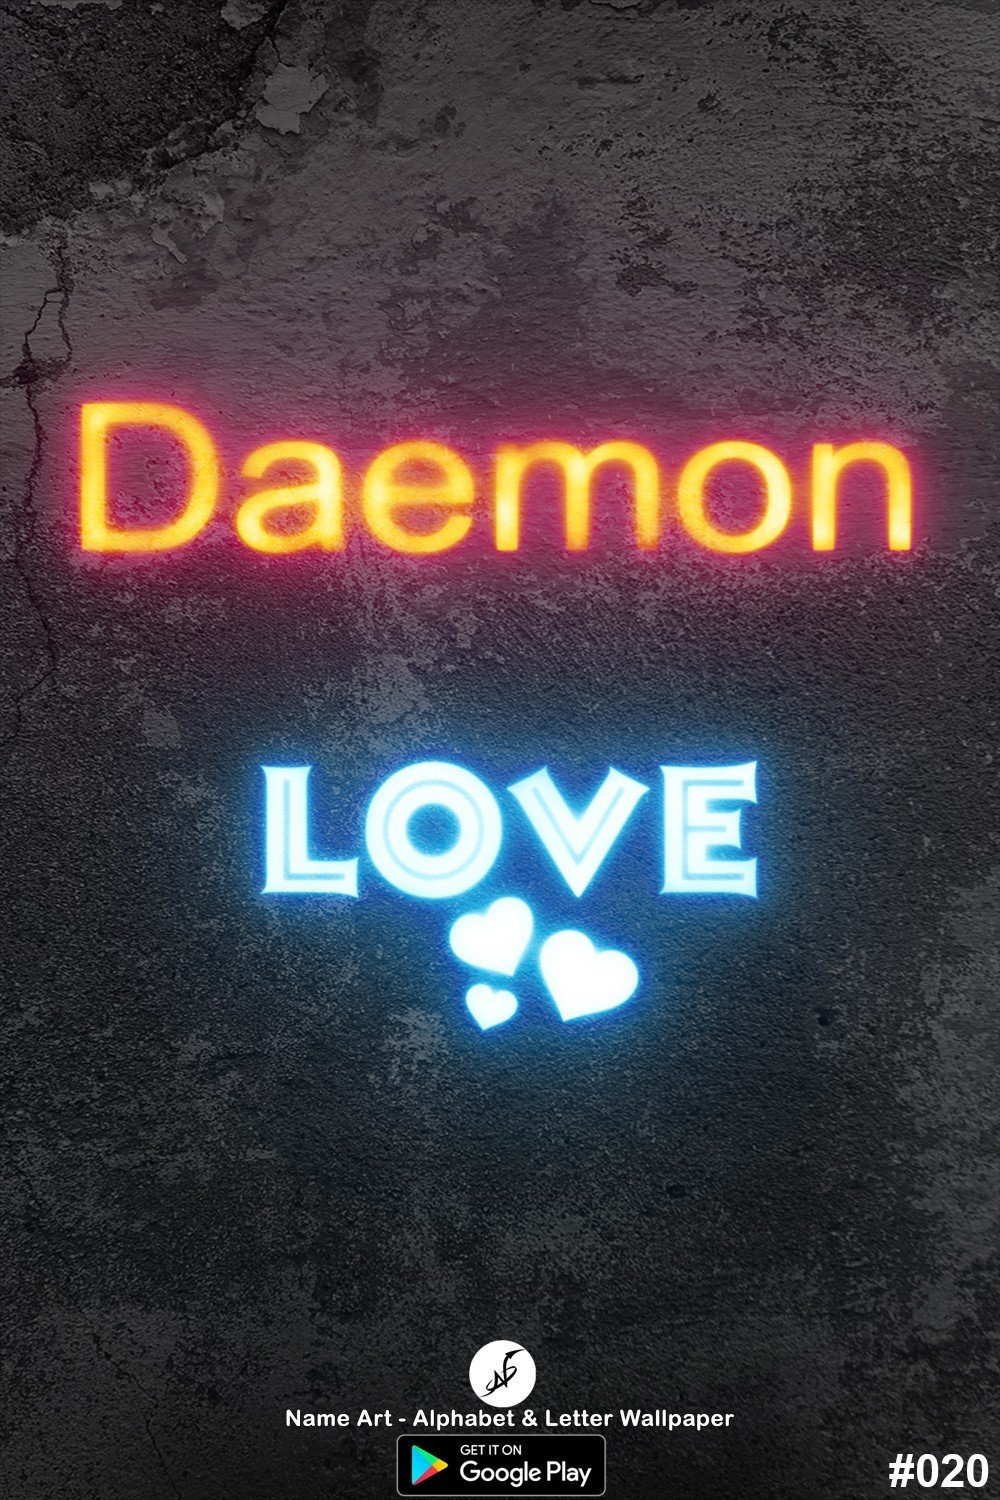 Daemon | Whatsapp Status Daemon | Happy Birthday Daemon !! | New Whatsapp Status Daemon Images |